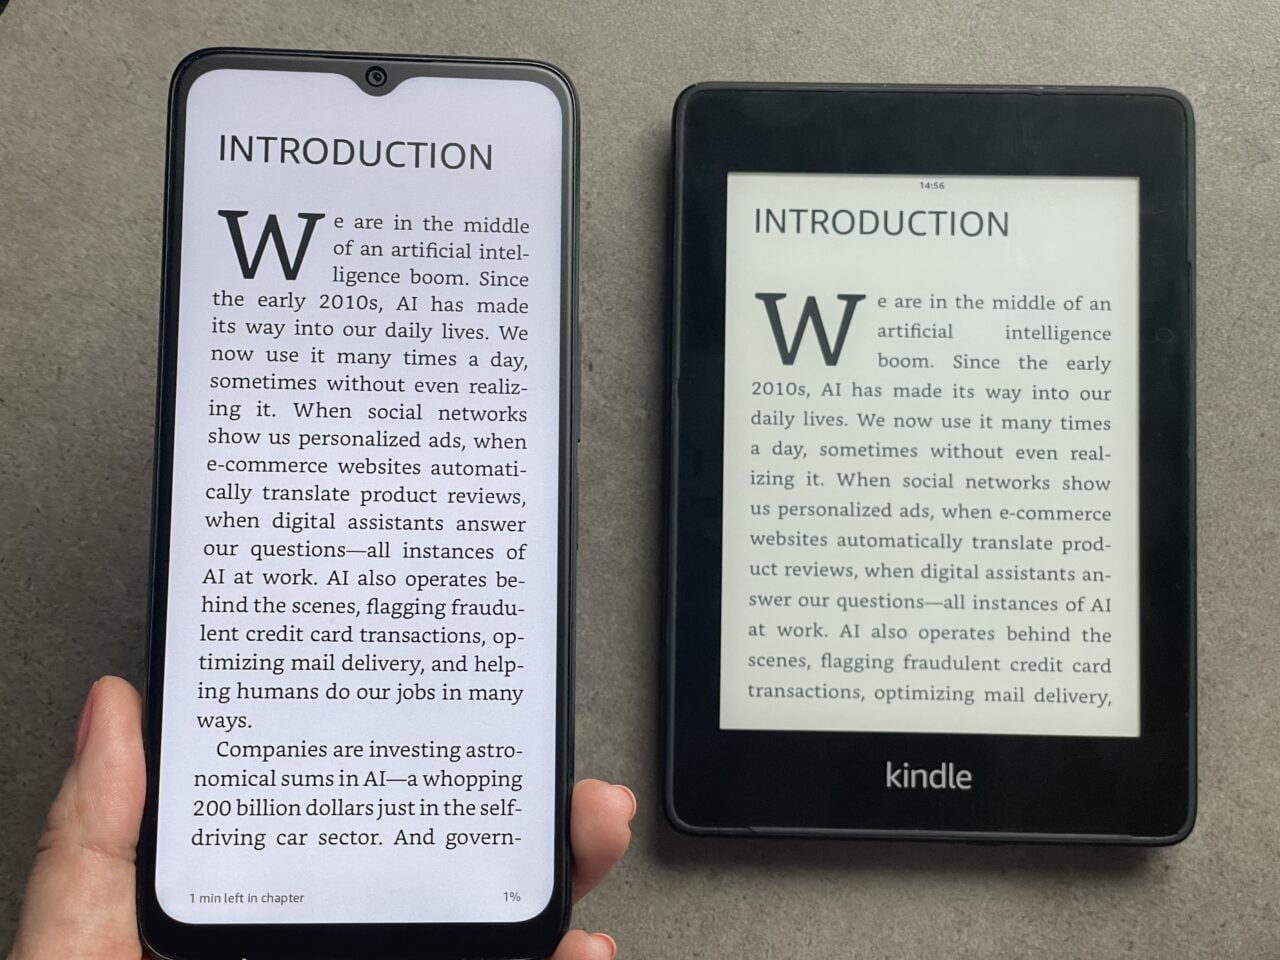 Dwa czytniki e-booków leżące na szarym tle: po lewej biały z włączonym ekranem ukazującym początek rozdziału zatytułowanego "Introduction", po prawej czarny z wyświetloną tą samą treścią i logo "kindle" na dole.